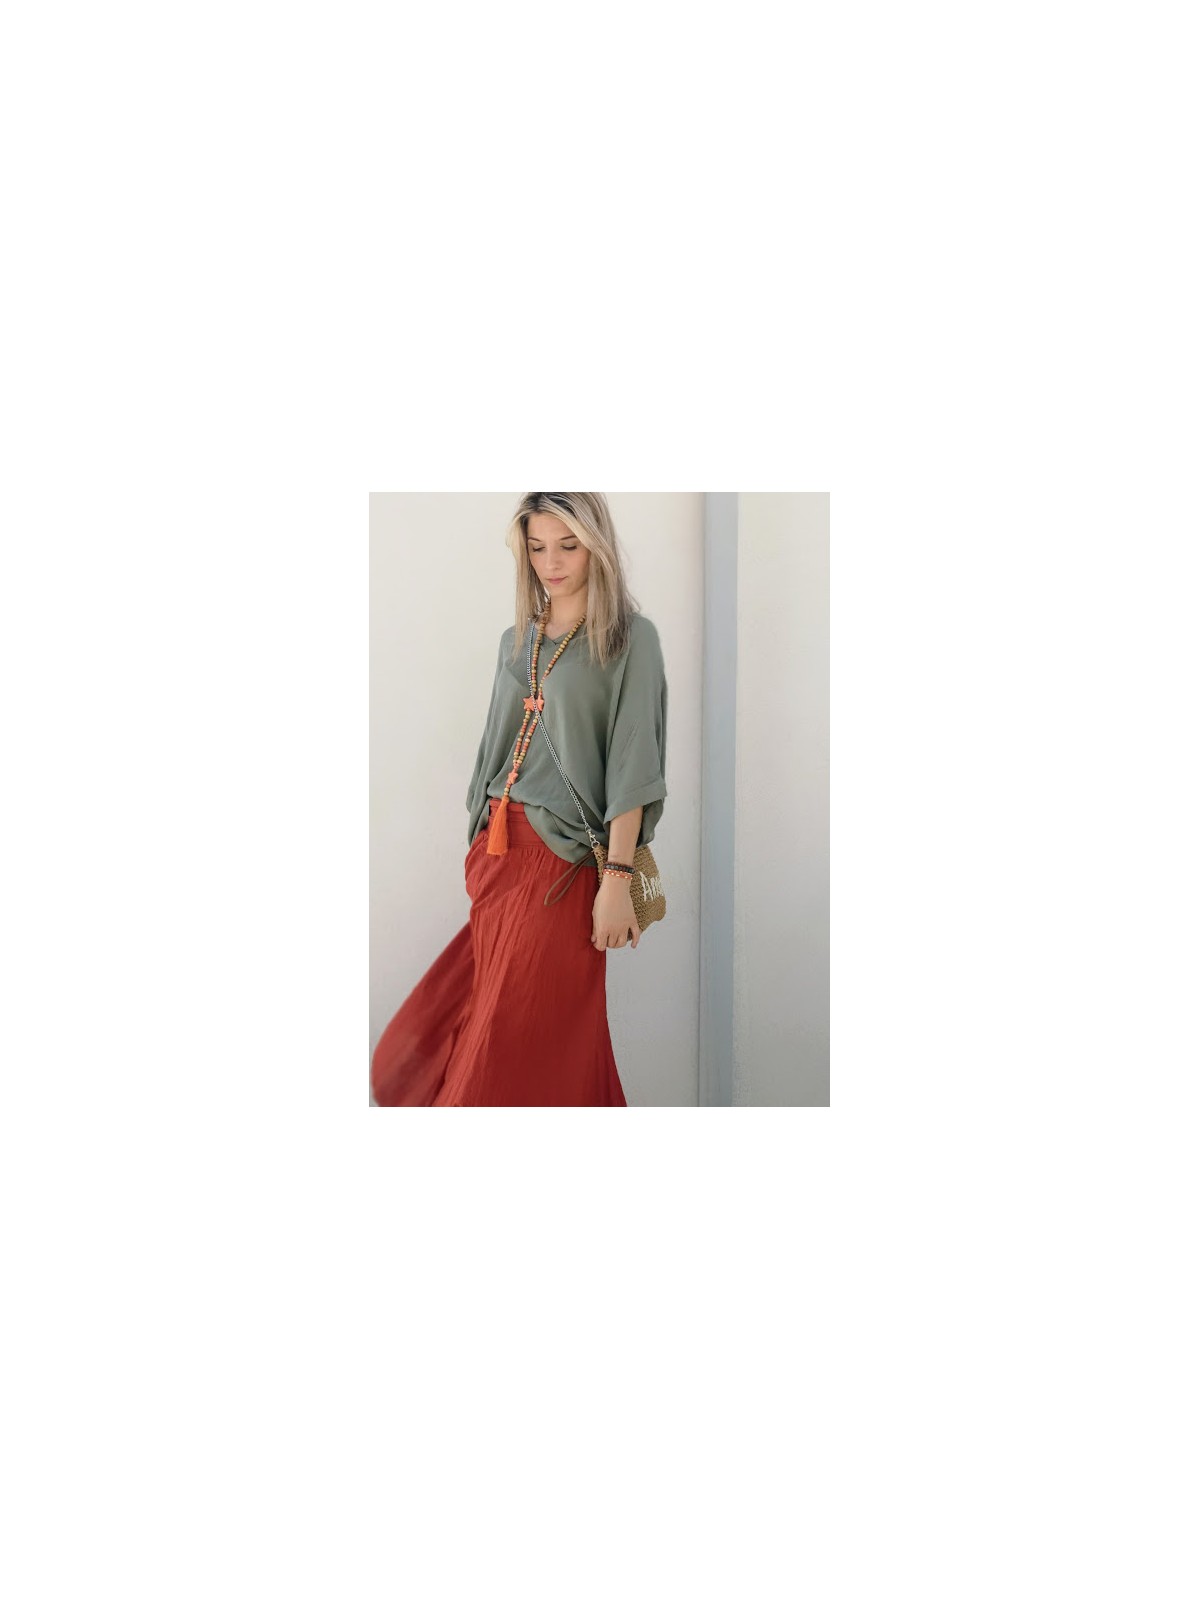 Jupe longue terracotta | 2 vue de profil rapprochée | Tilleulmenthe boutique de mode femme en ligne